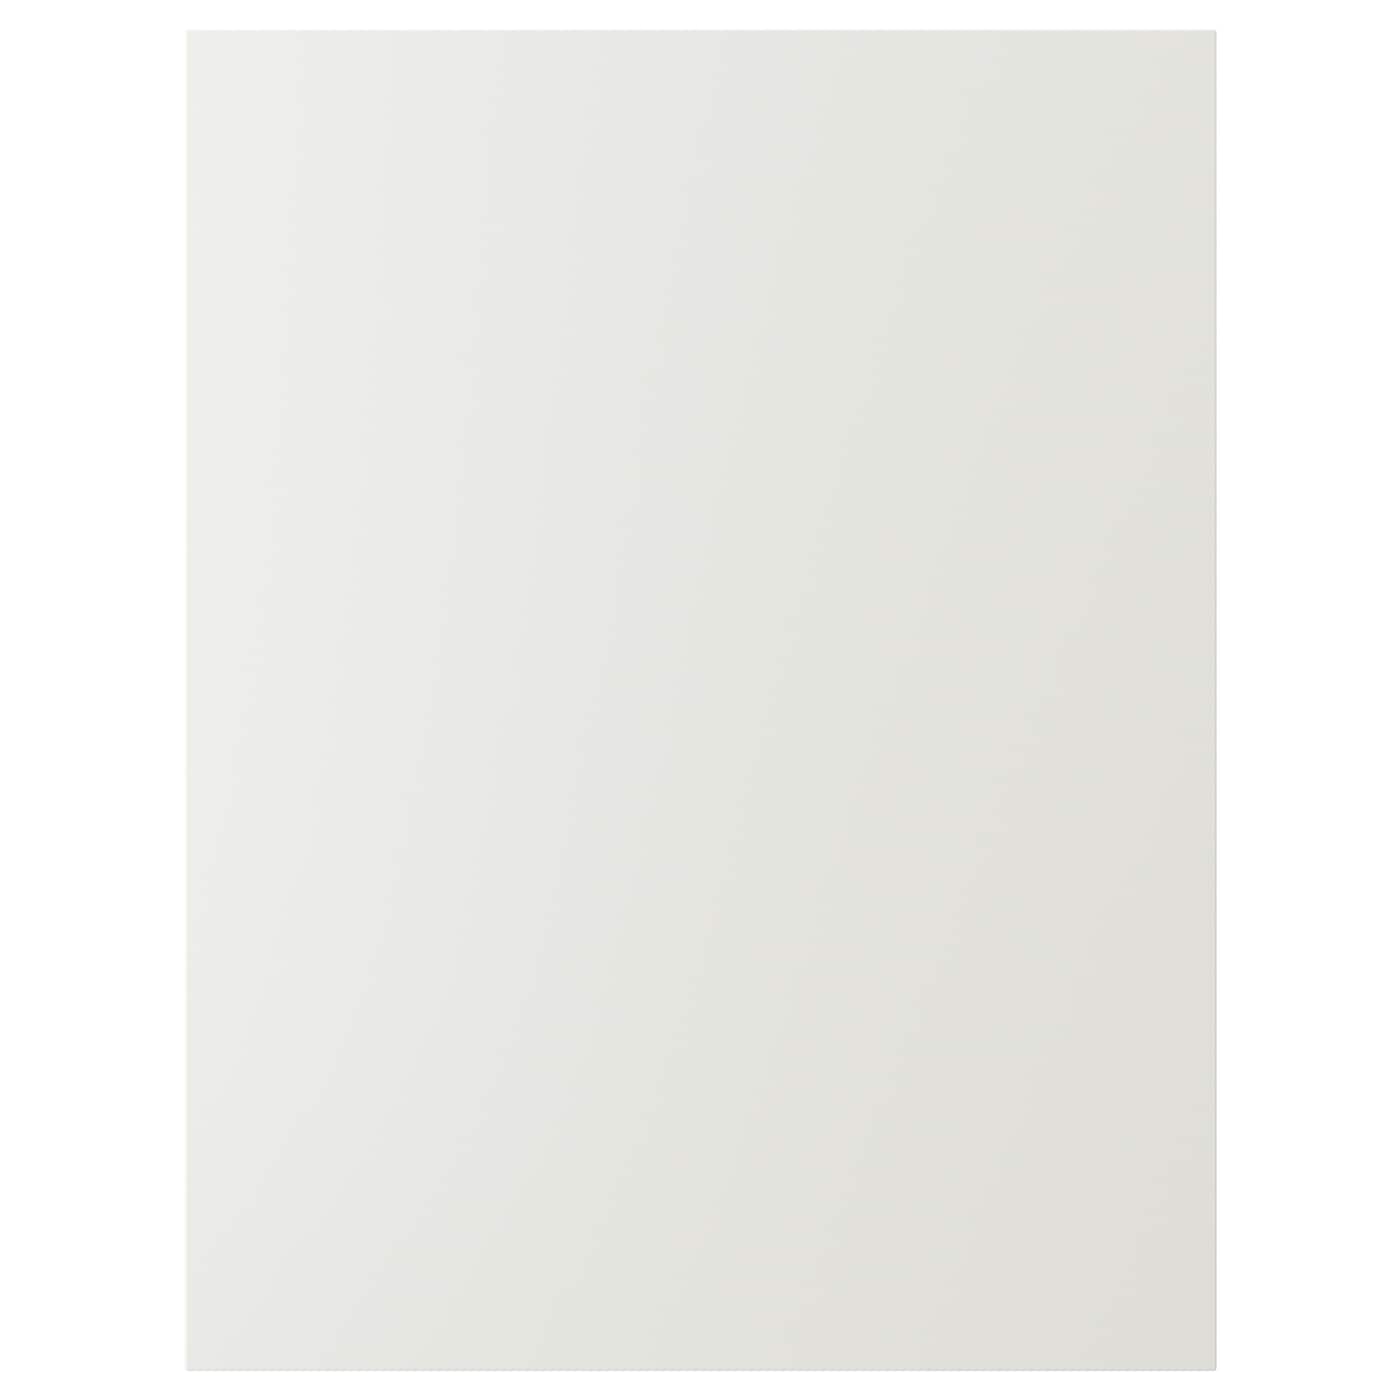 Накладная панель - IKEA STENSUND, 80х62 см, белый, СТЕНСУНД ИКЕА